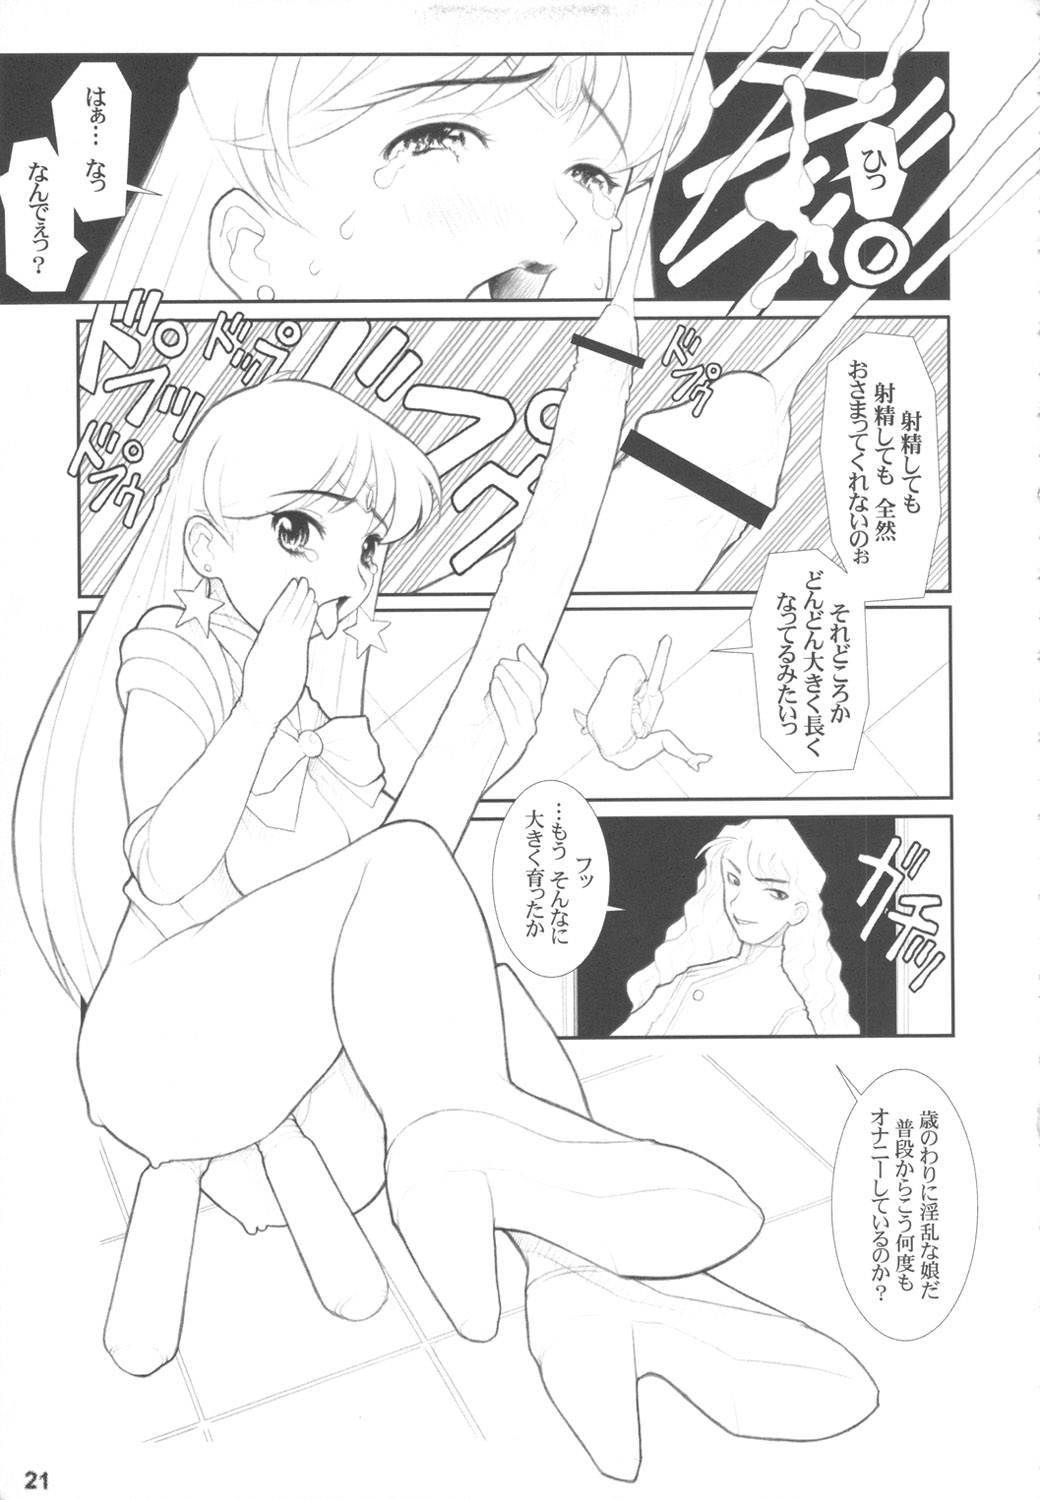 [DANGEROUS THOUGHTS] MaDArtistSSailoRMooN (Bishoujo Senshi Sailor Moon) [DANGEROUS THOUGHTS] MaDArtistSSailoRMooN (美少女戦士セーラームーン)